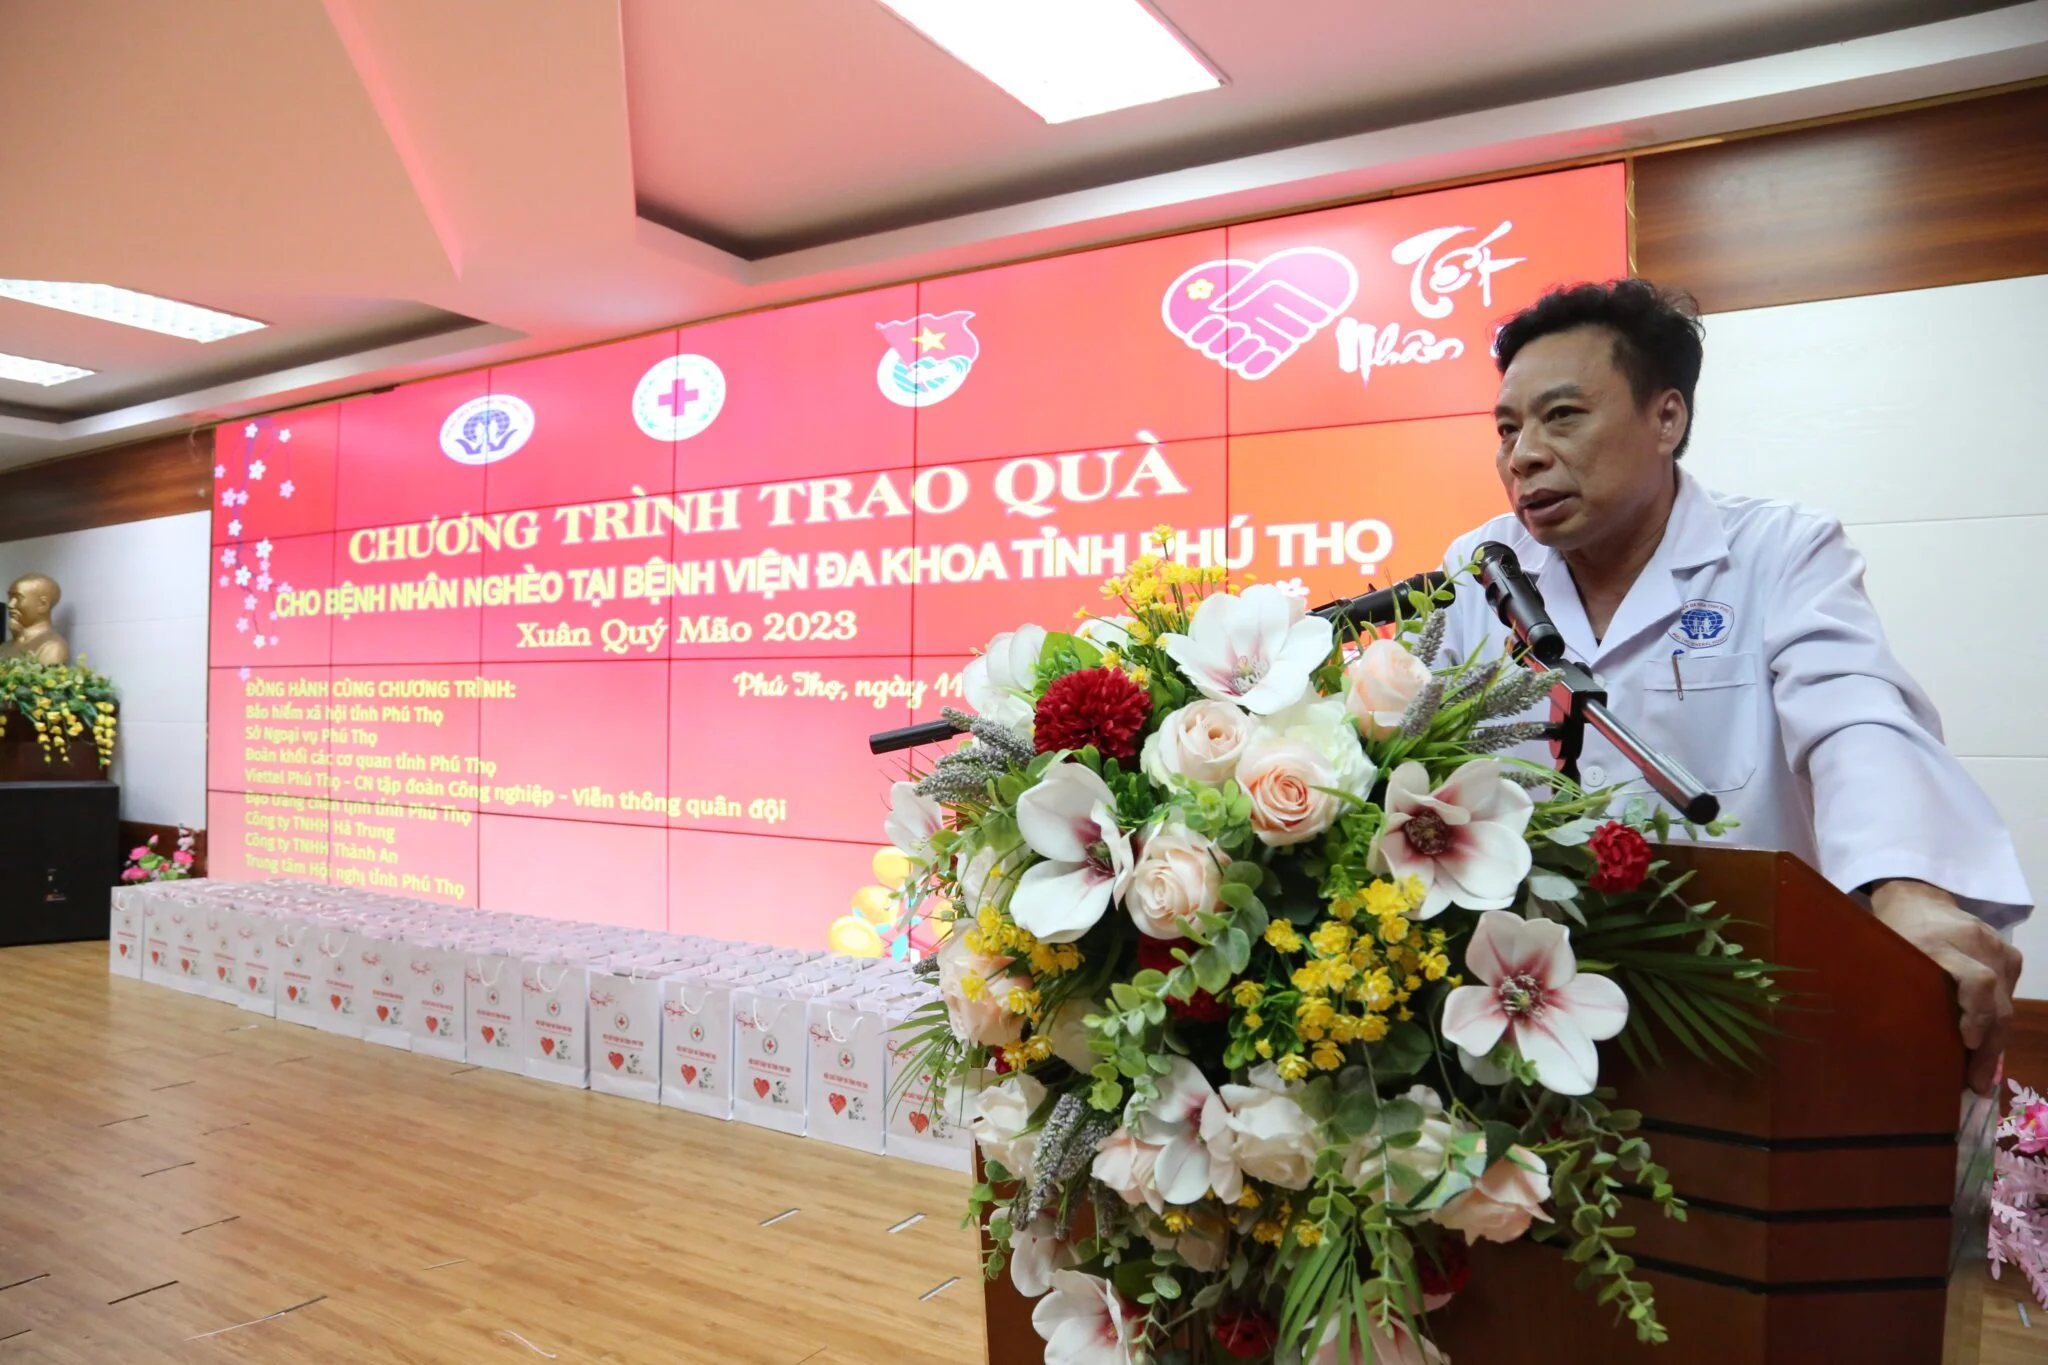 TTƯT.PGS. Nguyễn Văn Sơn – Phó Giám đốc Bệnh viện đa khoa tỉnh Phú Thọ phát biểu tại chương trình